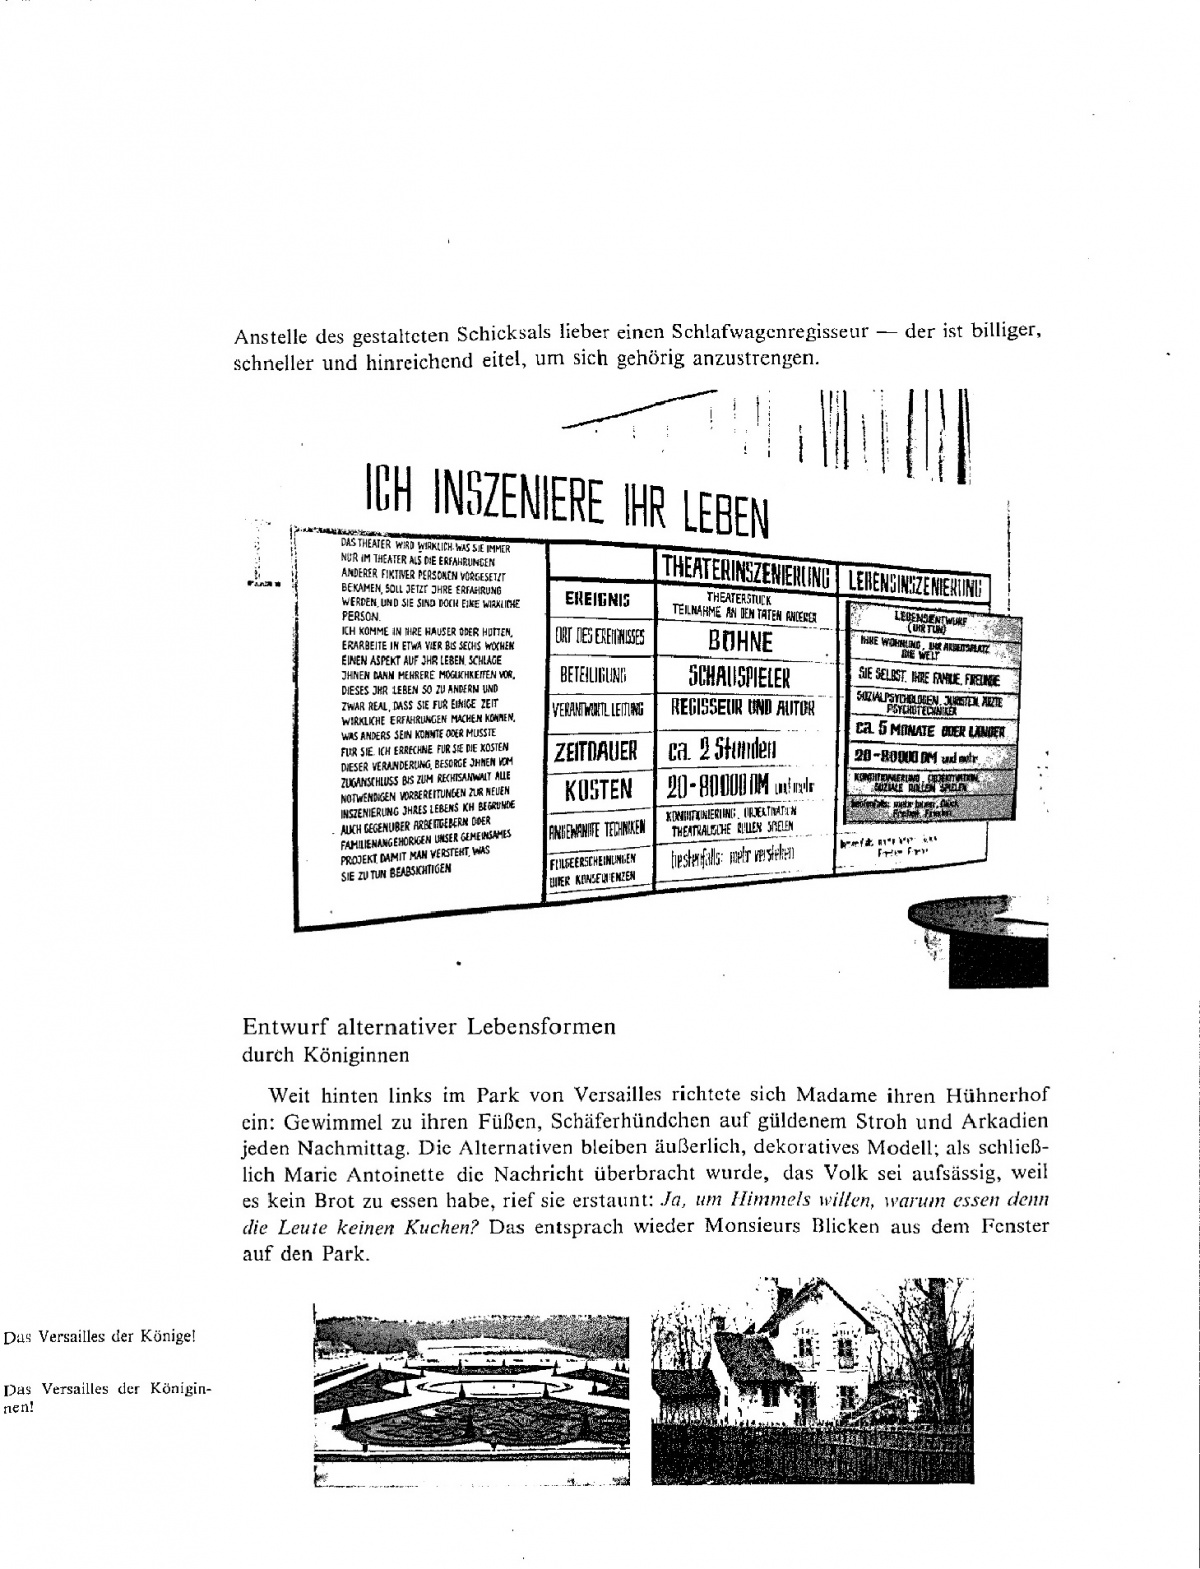 Sozio-Design (Bildessay). In: Design ist unsichtbar. Wien 1981, S. 56